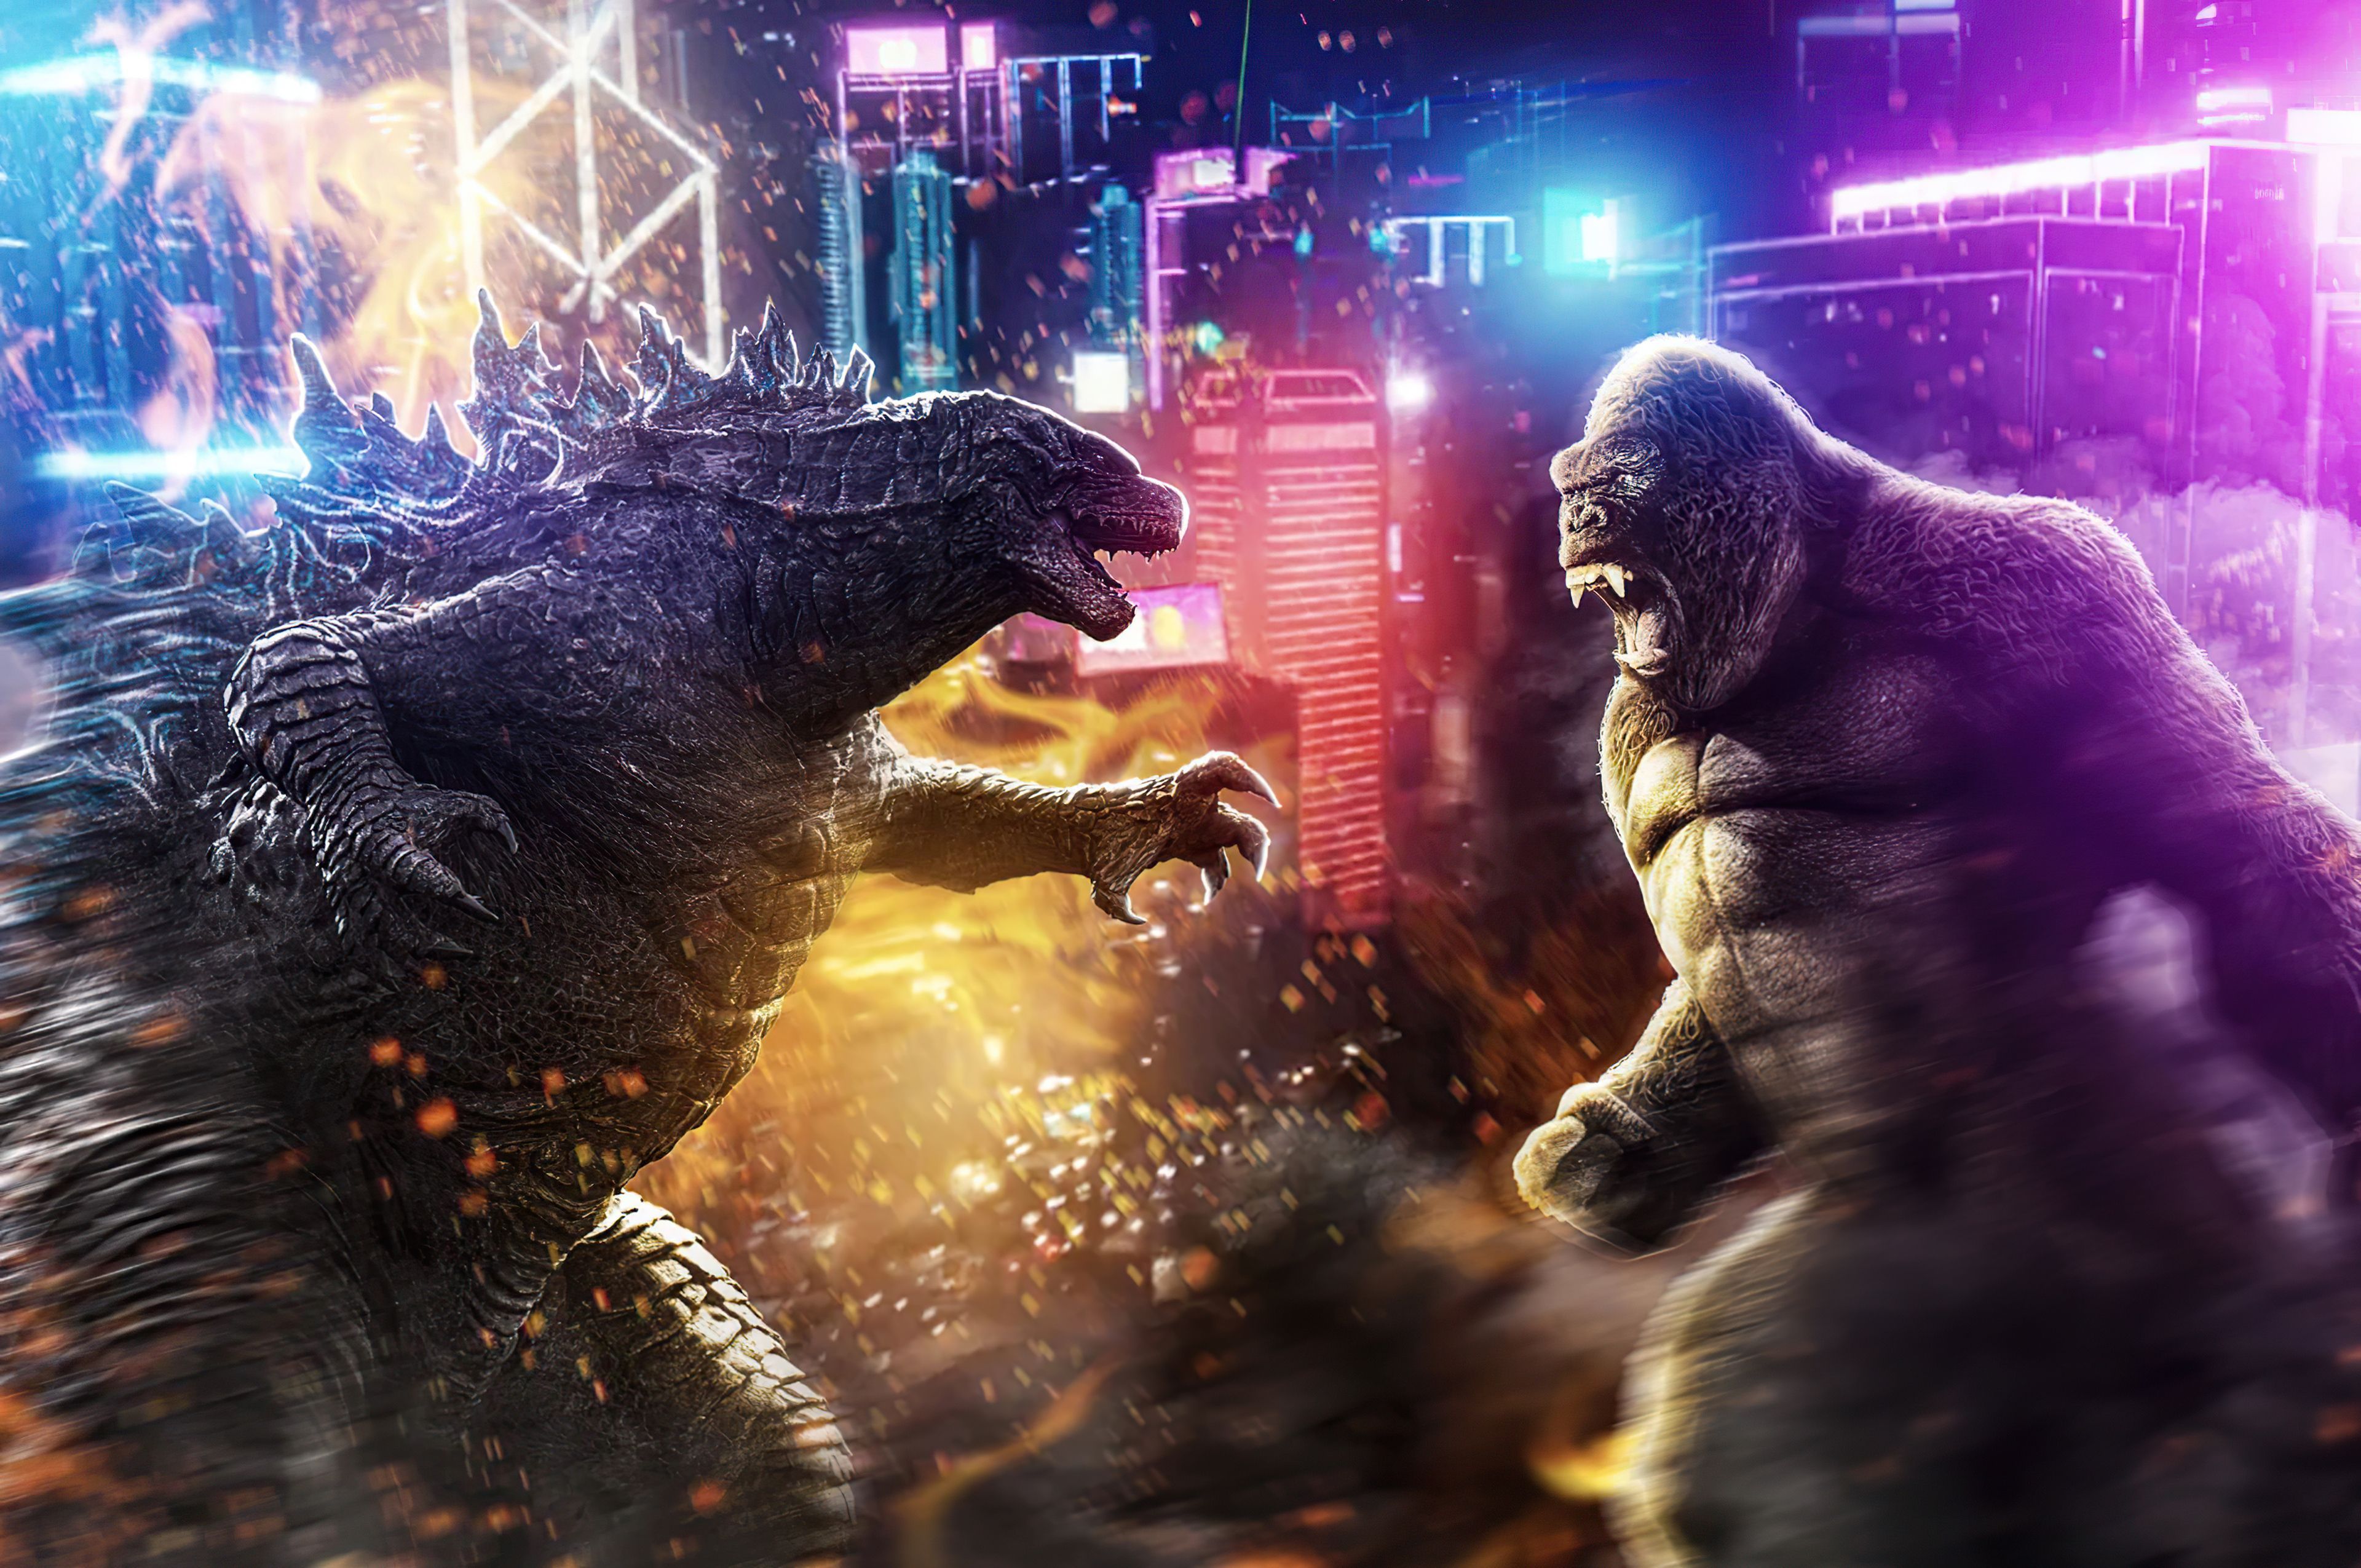 King Kong Vs Godzilla Wallpaper Free King Kong Vs Godzilla Background